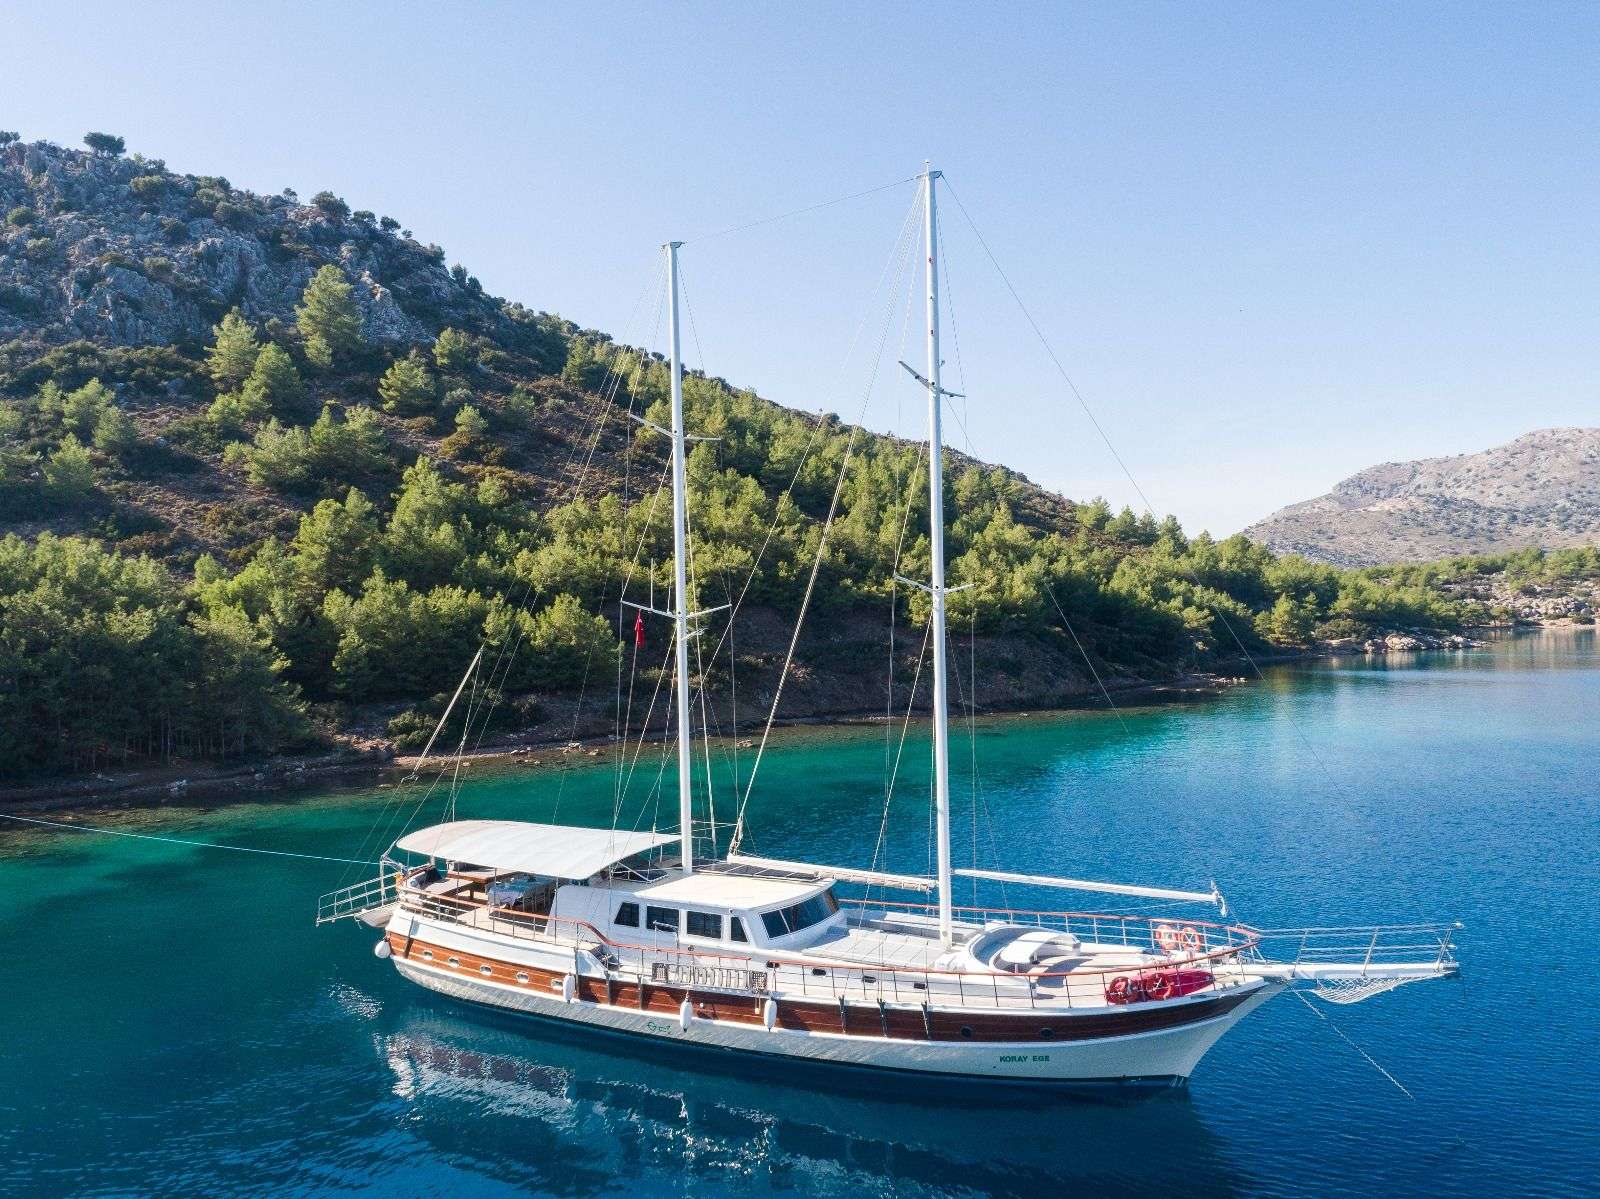 koray ege - Yacht Charter Mykonos & Boat hire in Greece & Turkey 1